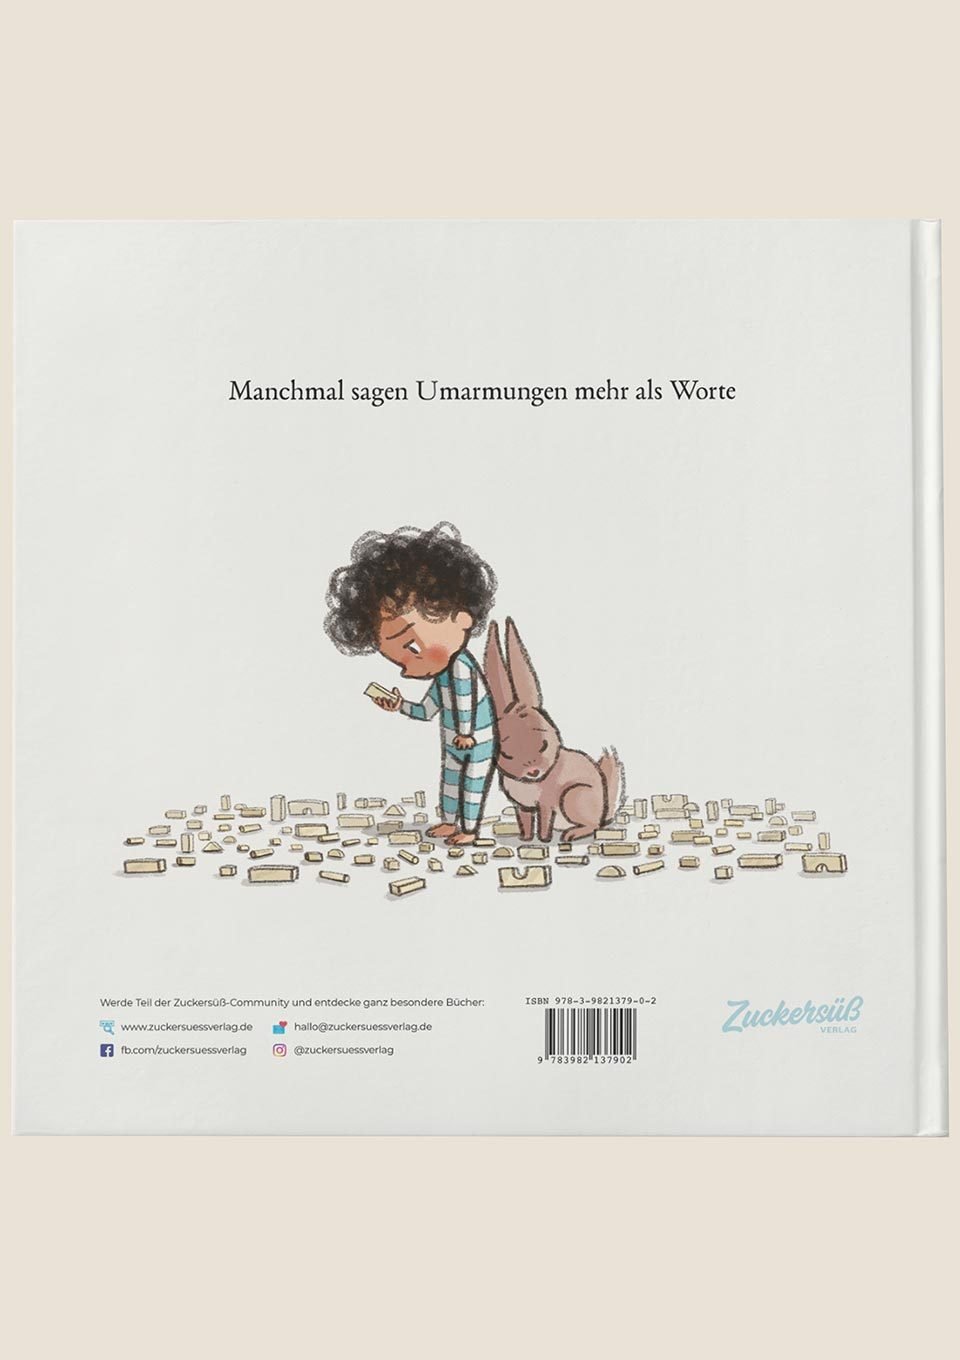 Zuckersüß Verlag Häschen tröstet - eines der schönsten Kinderbücher aller Zeiten - tiny-boon.com